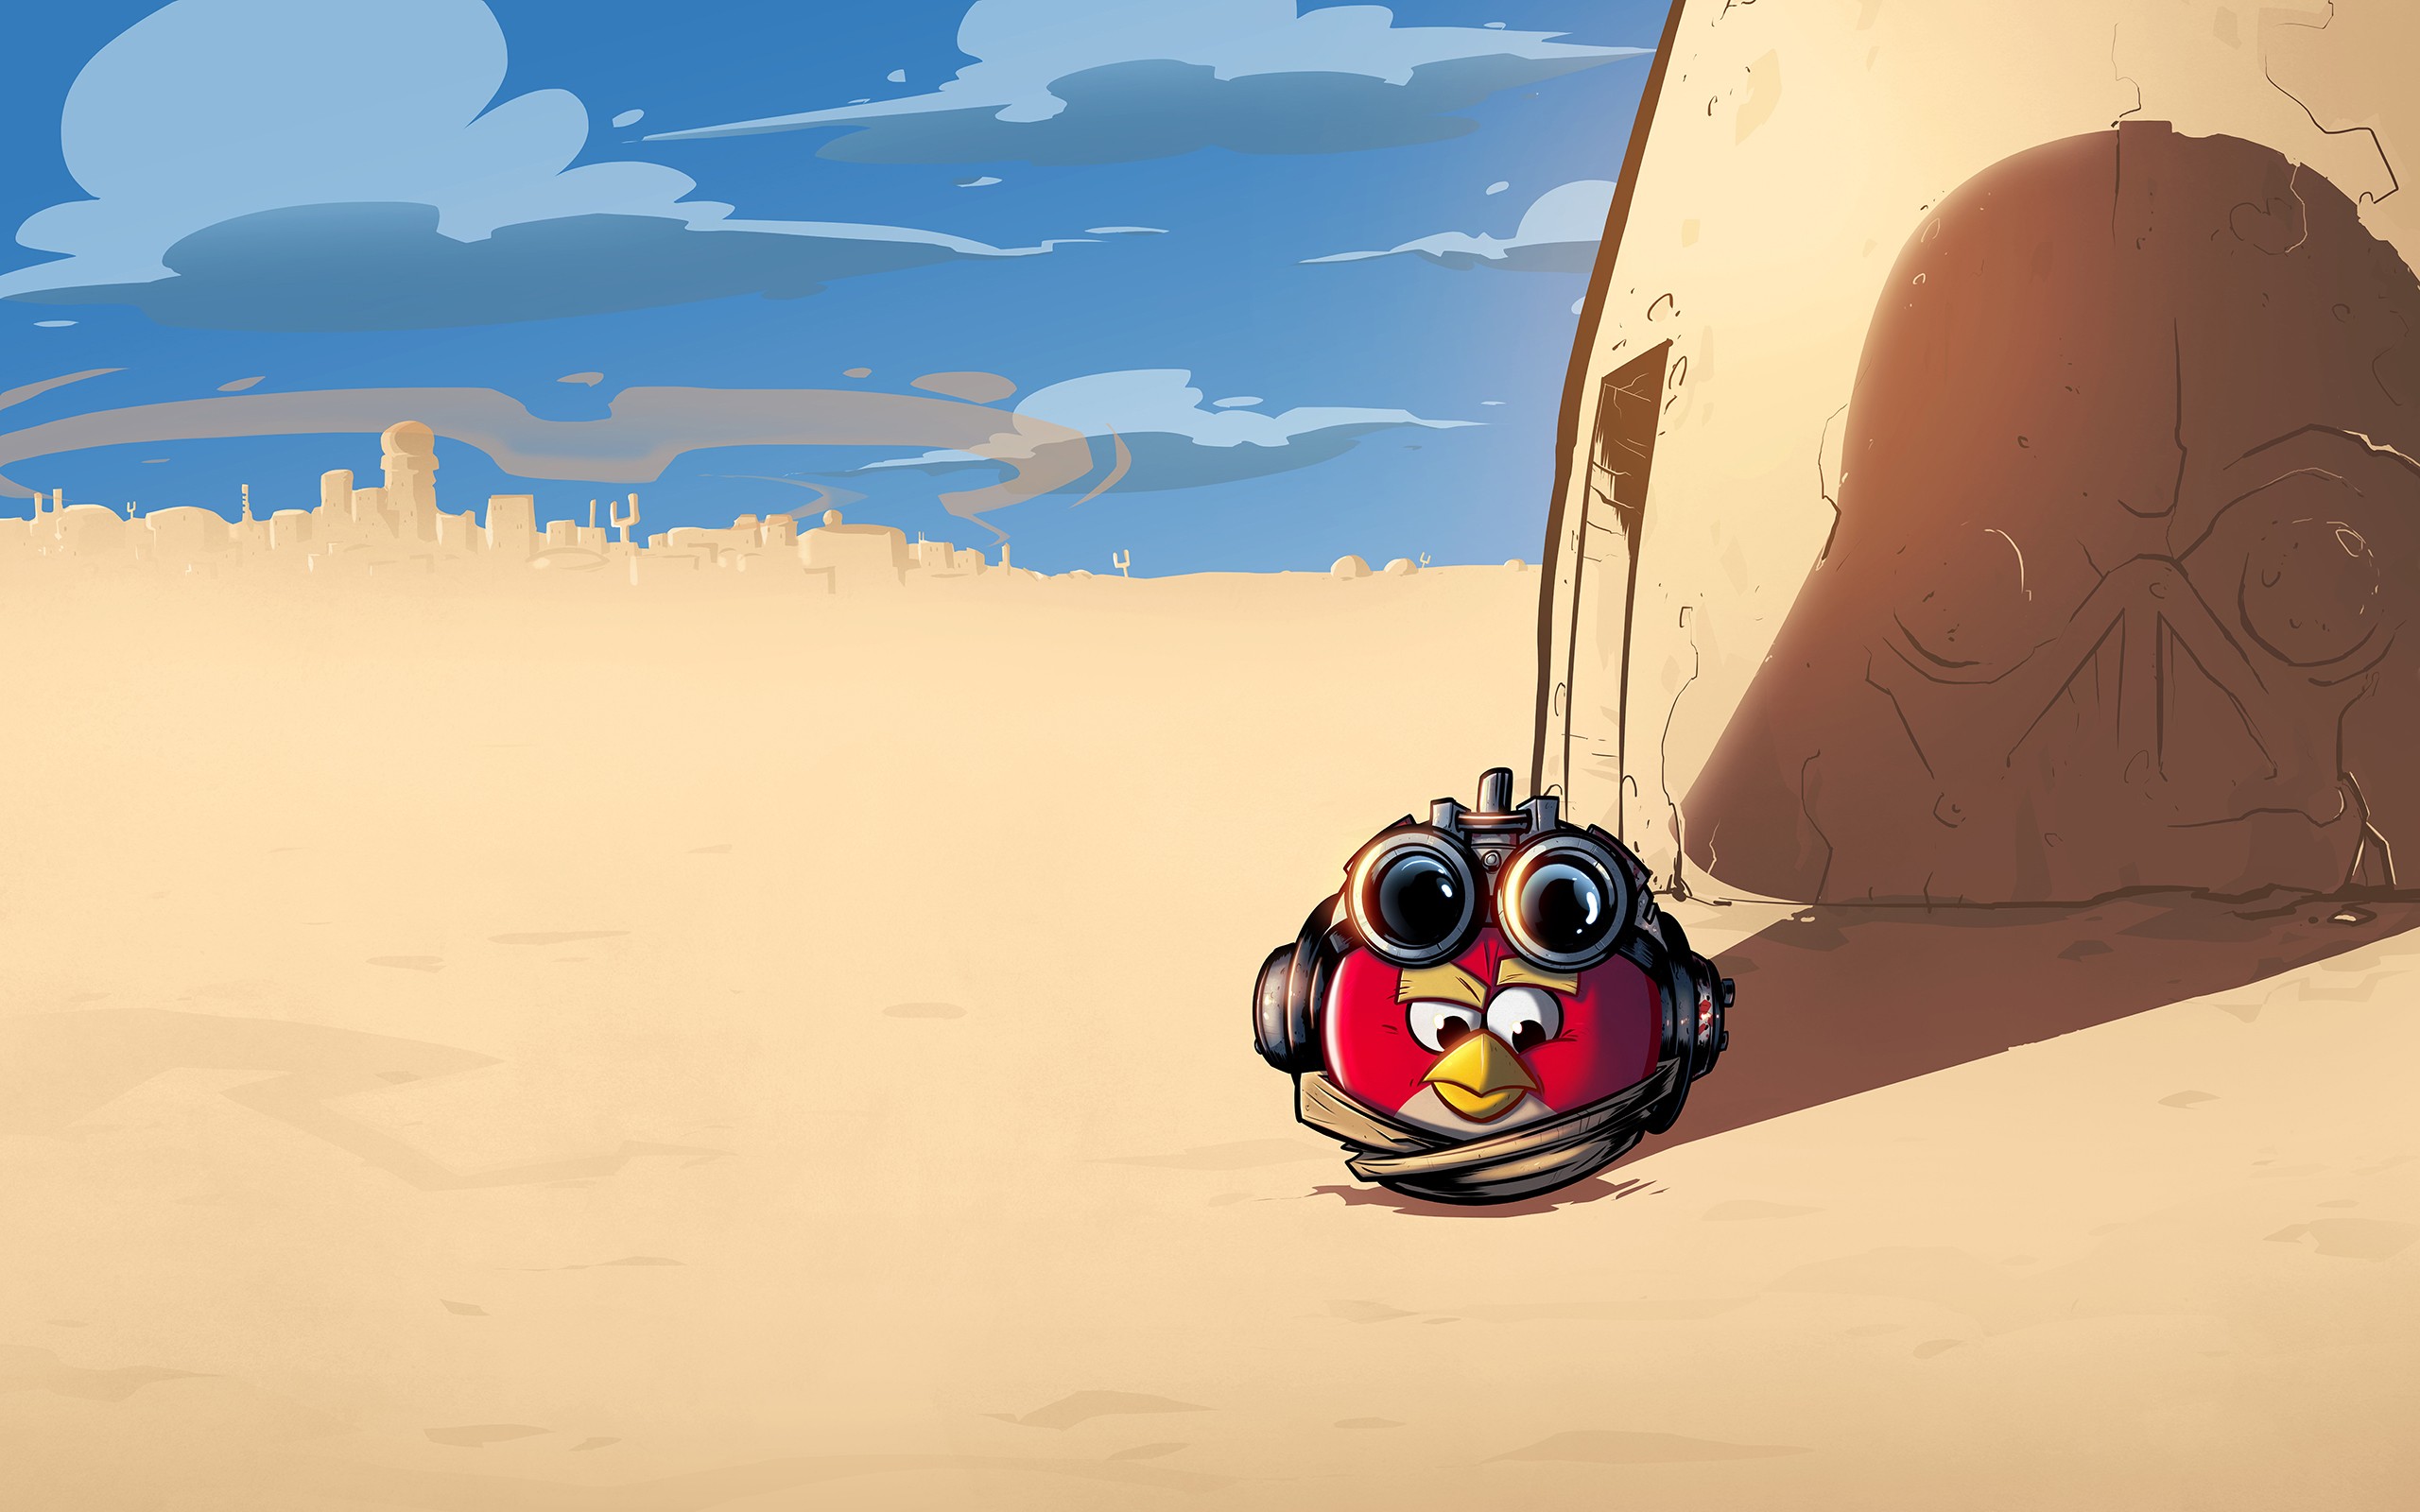 General 2560x1600 Star Wars Angry Birds desert Tatooine Anakin Skywalker humor crossover digital art